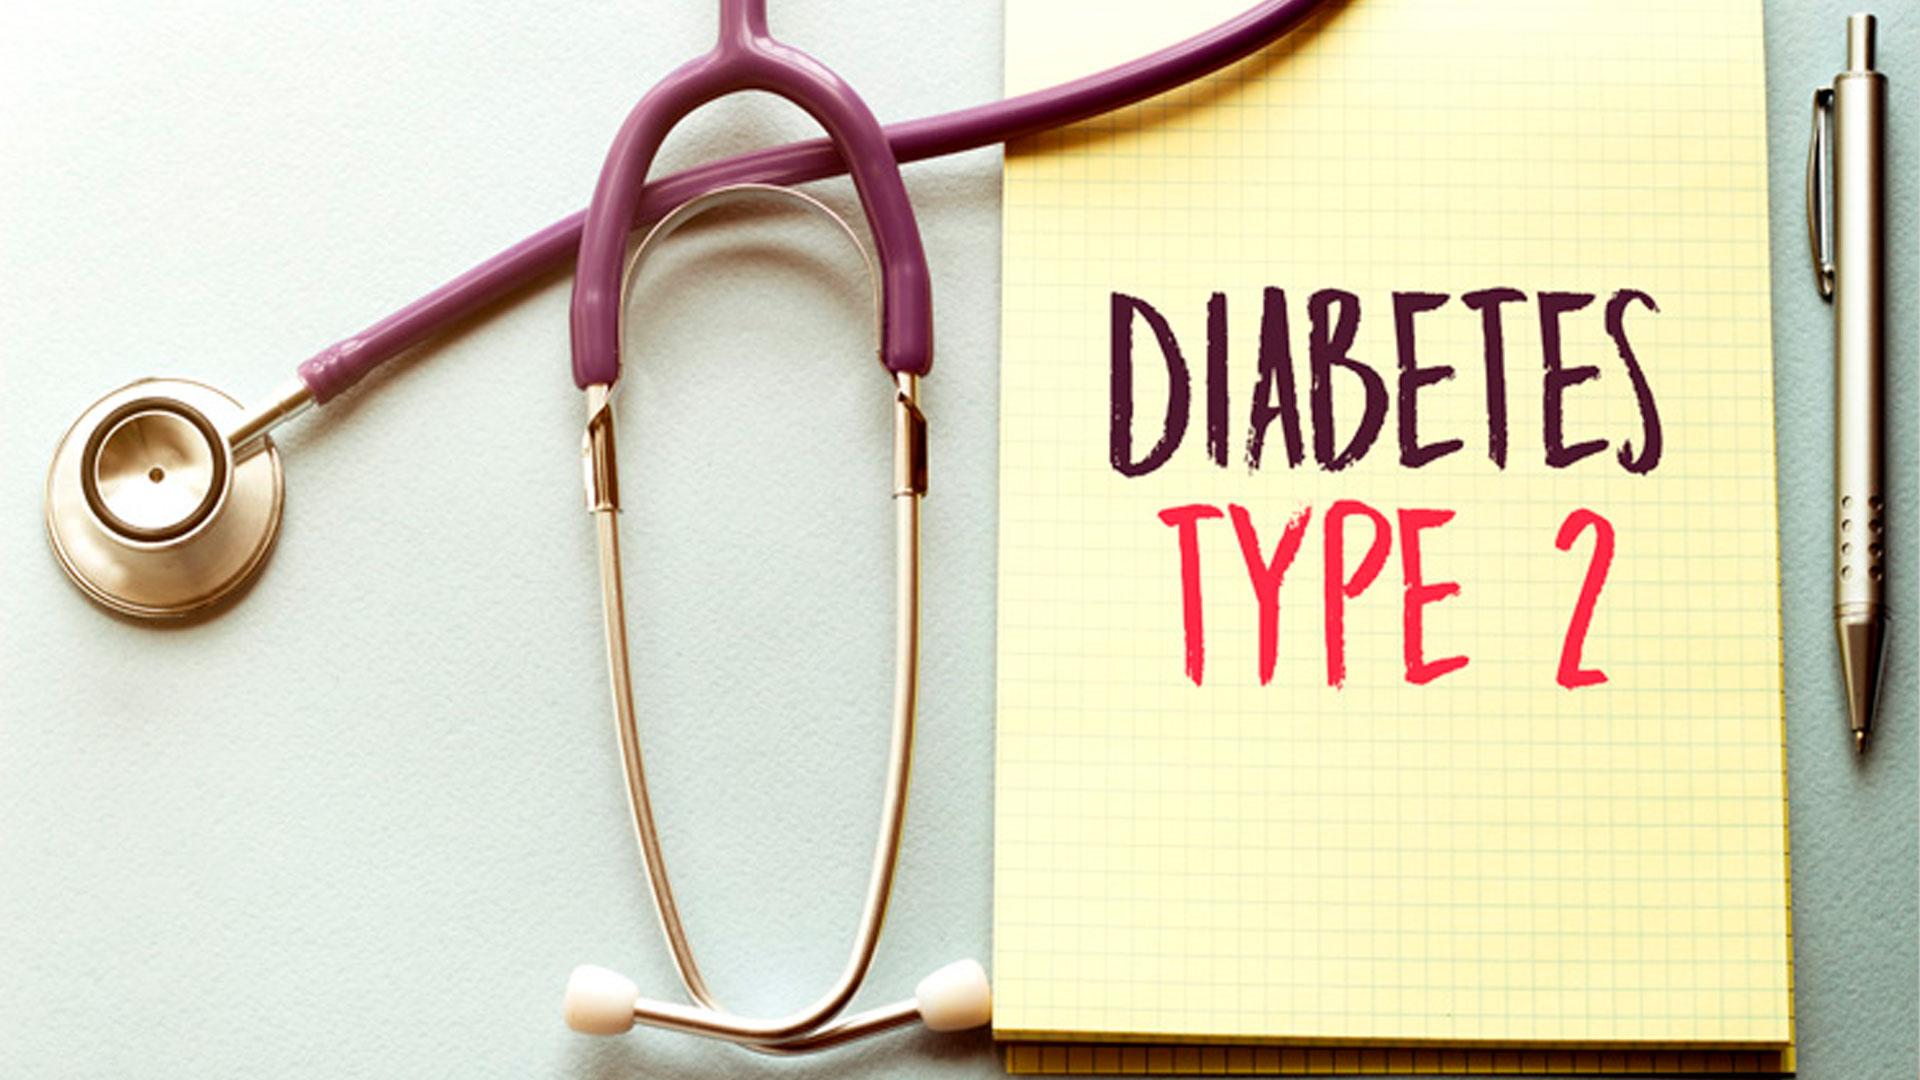 Diabete di tipo 2, l’esordio precoce diminuisce l’aspettativa di vita